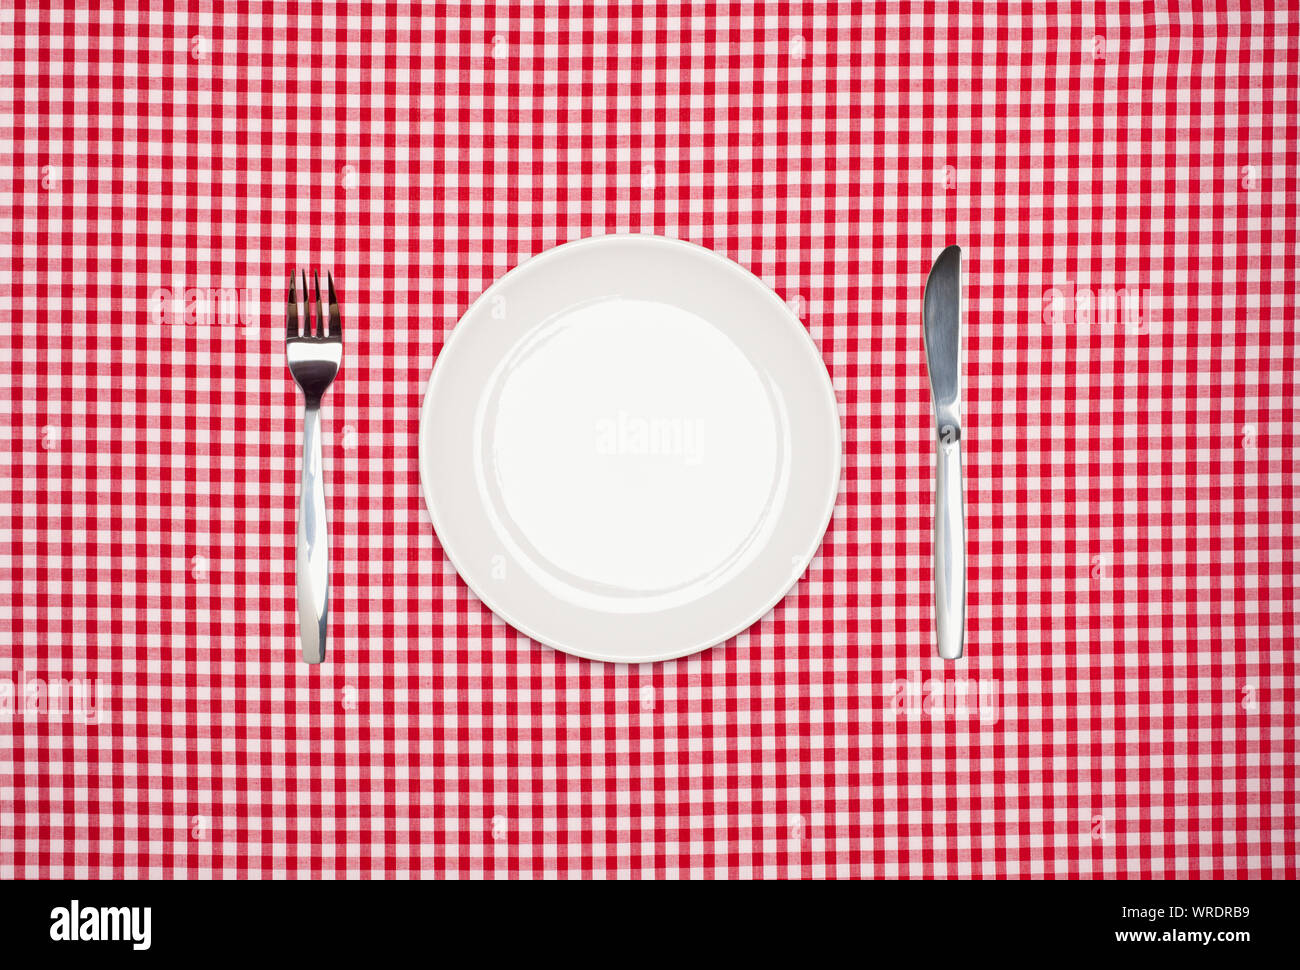 Ort, Einstellung, runde weiße Platte, Messer und Gabel, von oben auf rotem gingham Tischdecke Stockfoto